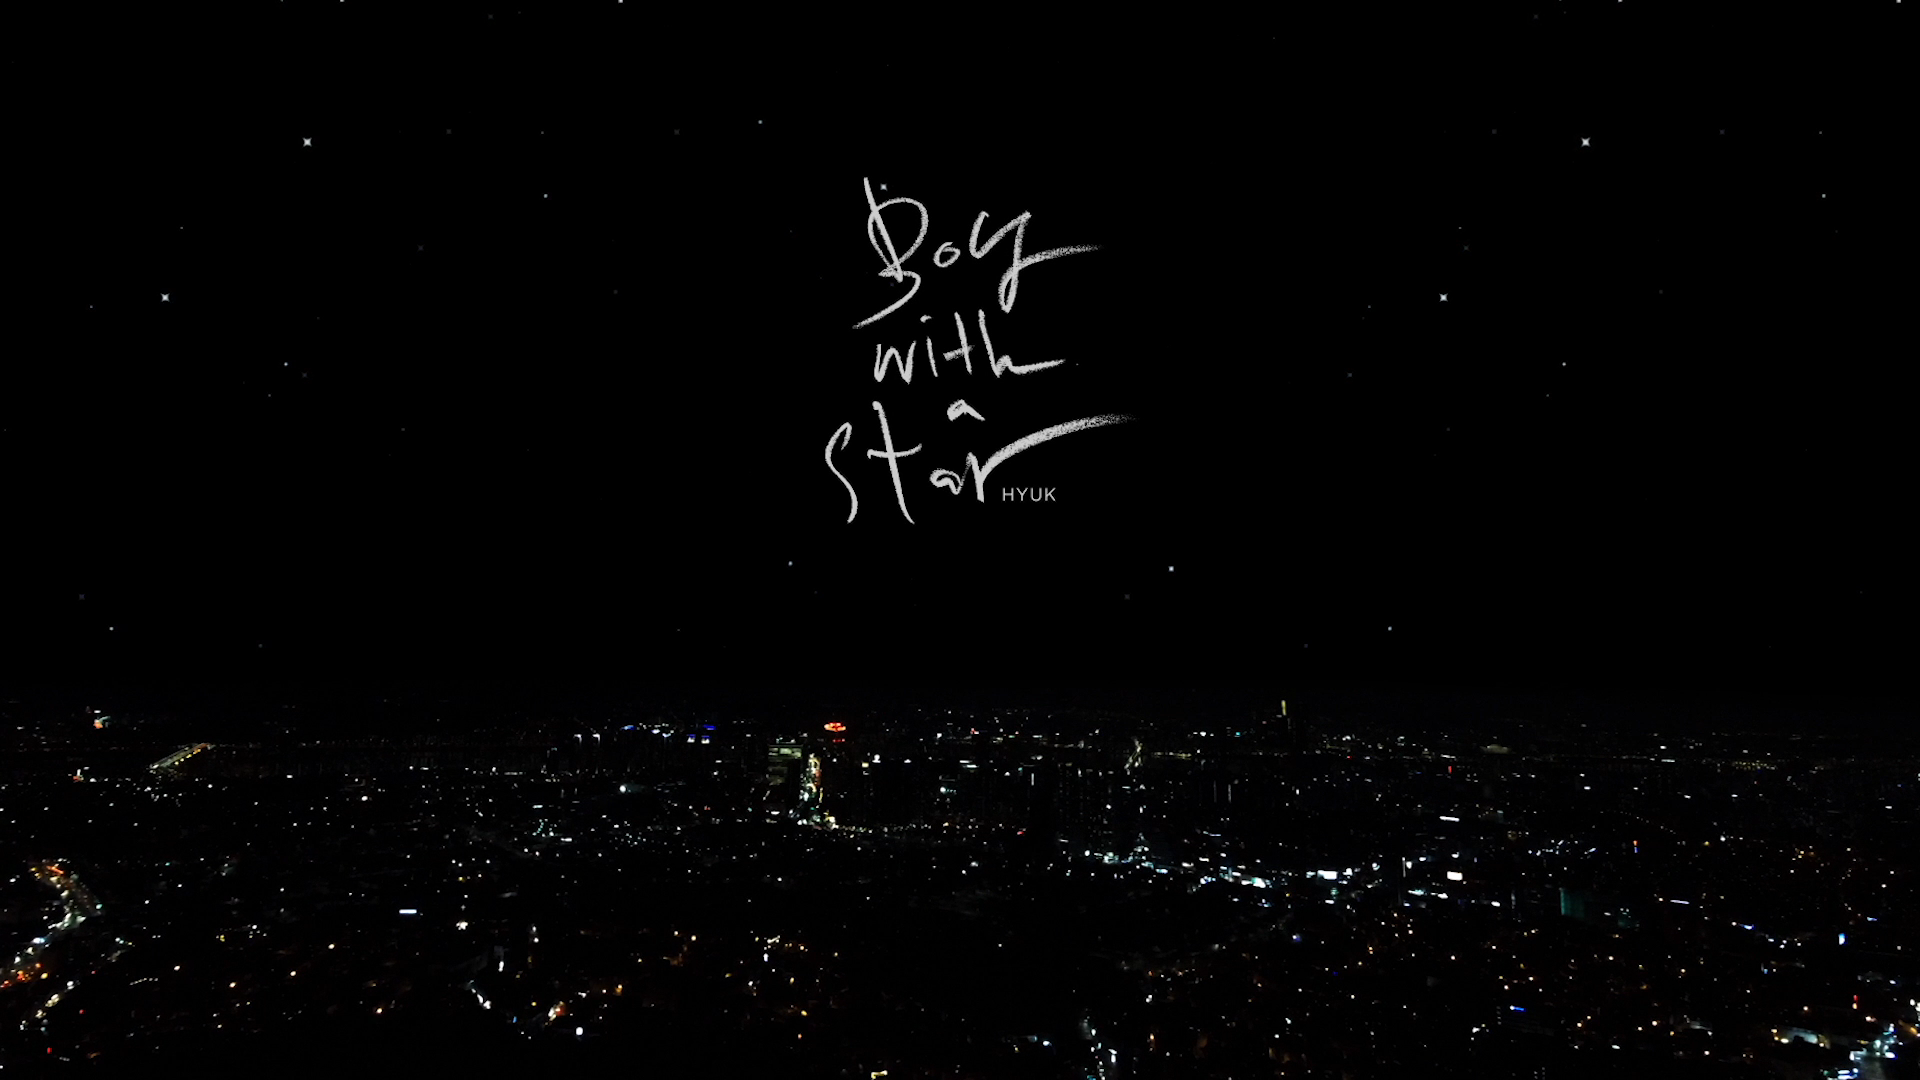 혁(HYUK) - 'Boy with a star' Official Lyric Video